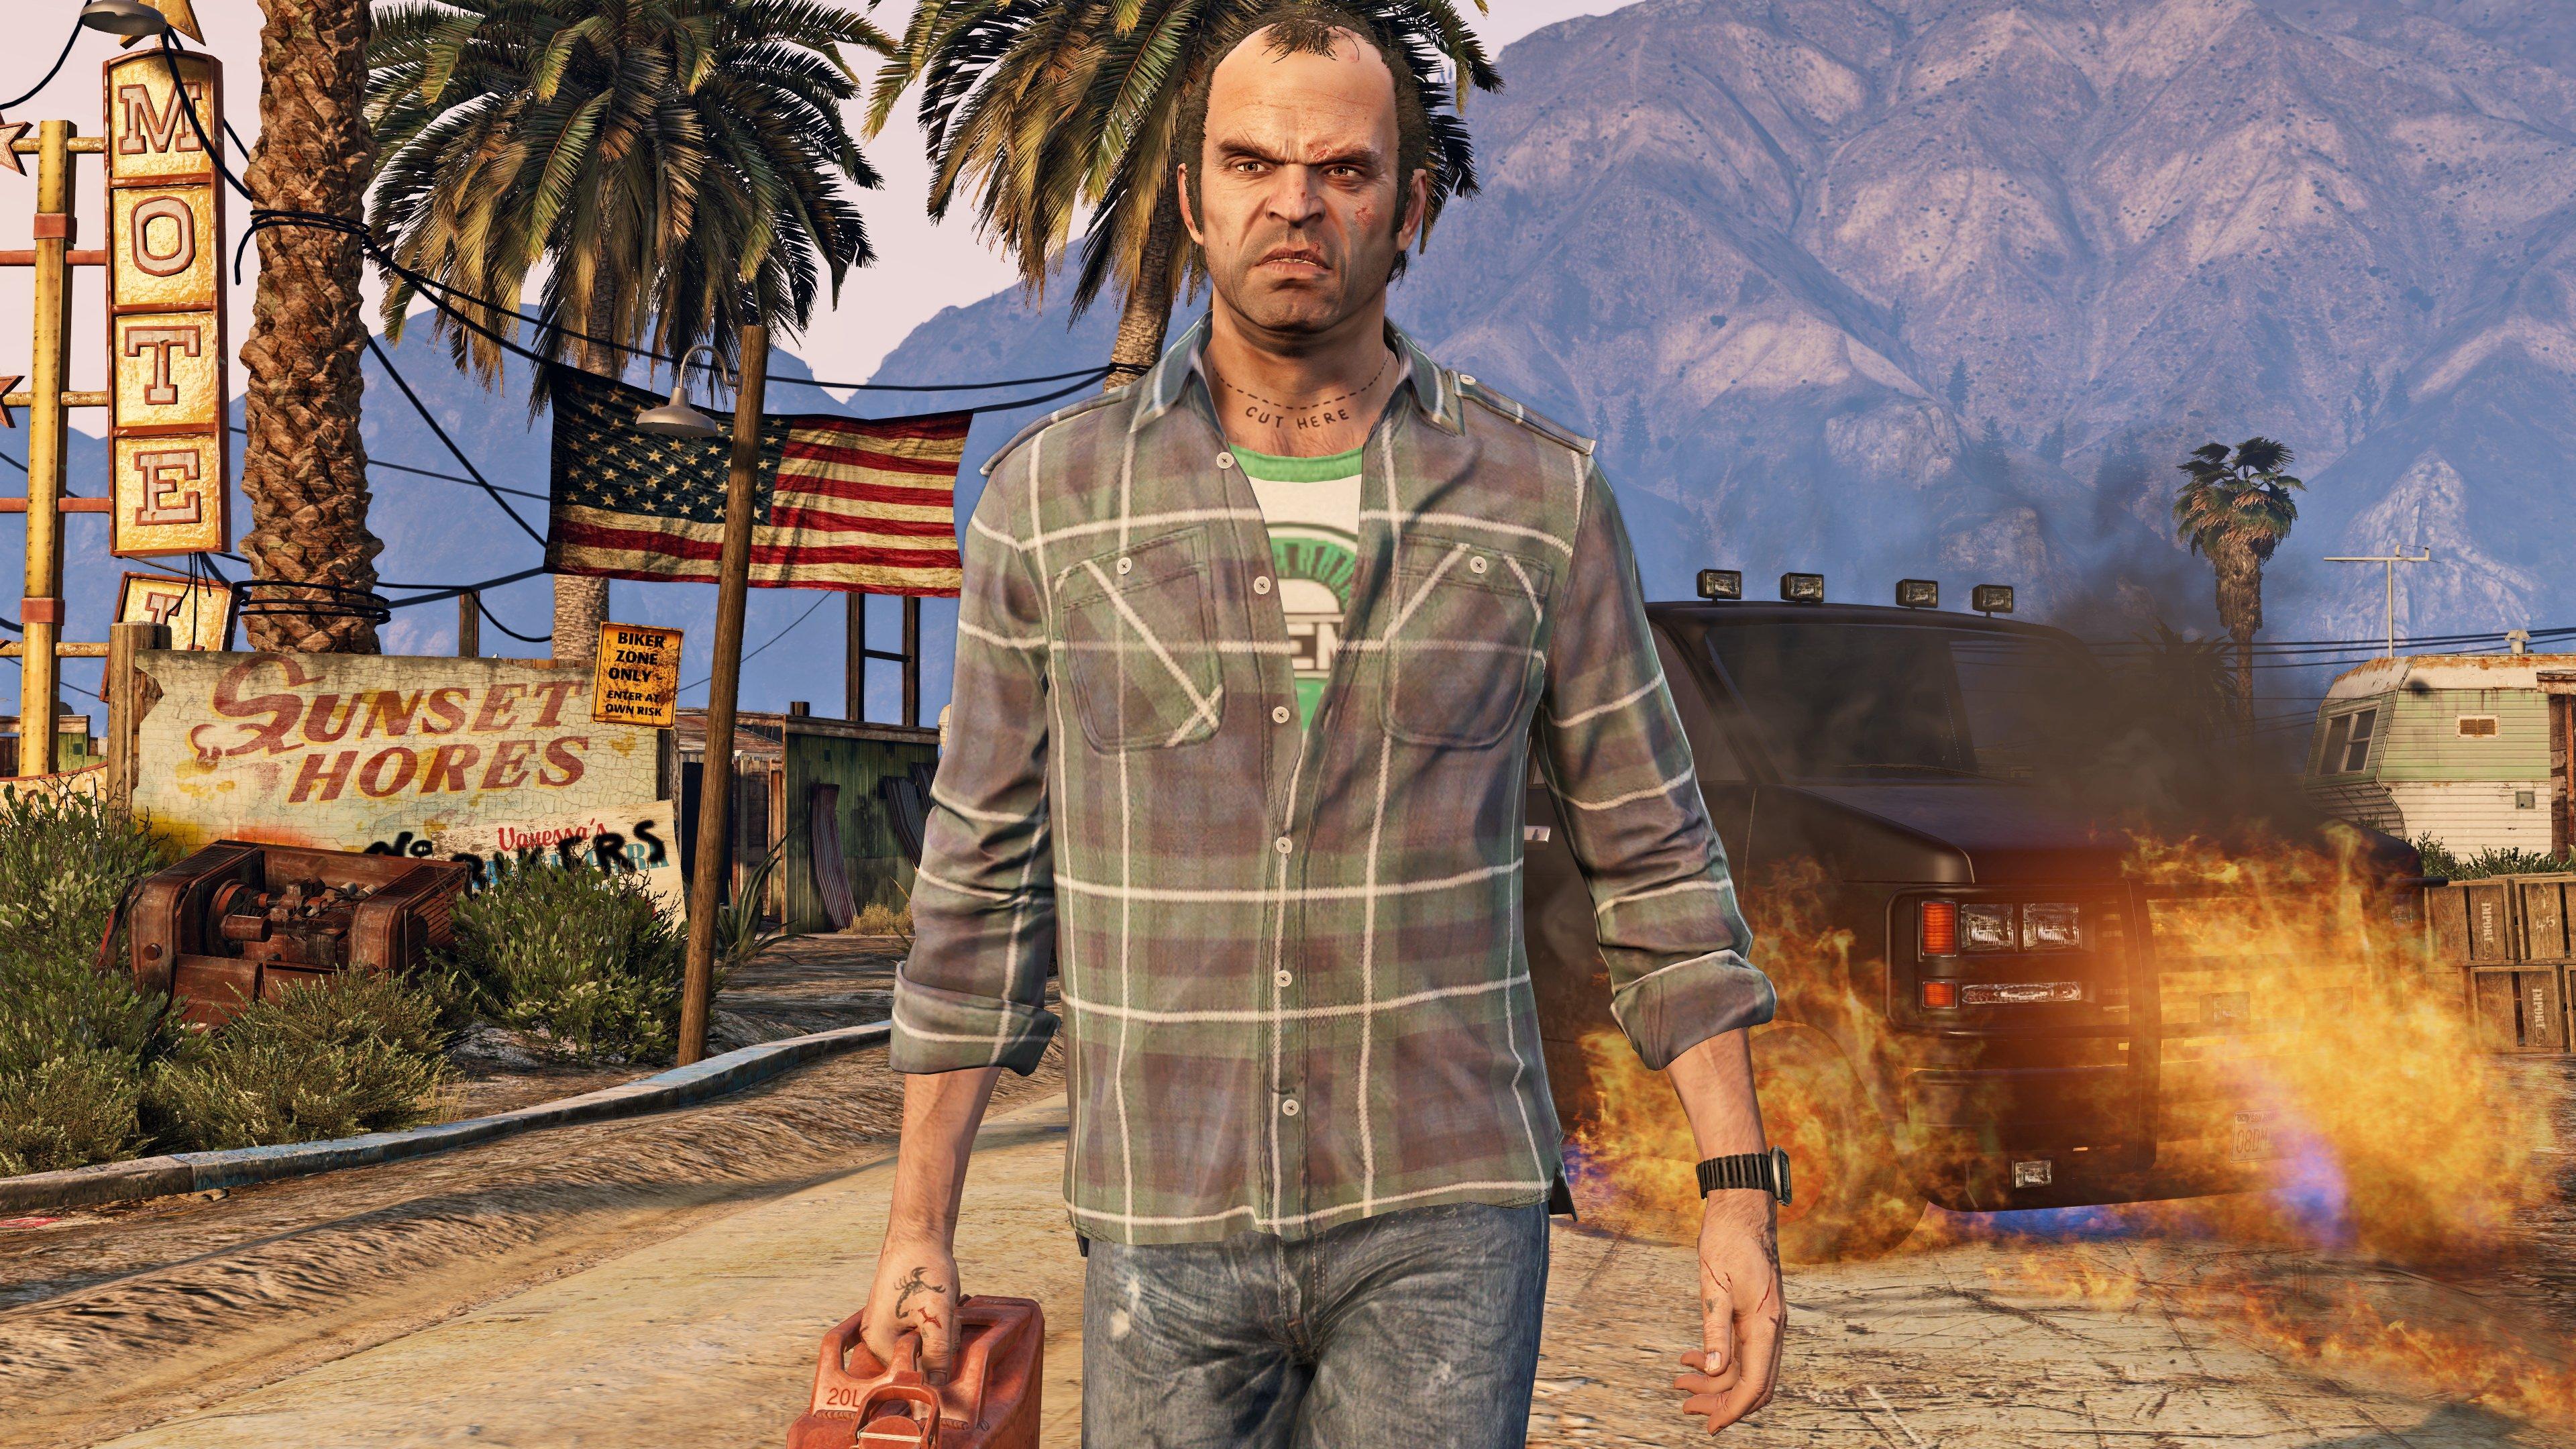 Grand Theft Auto V, Rockstar Games, PlayStation 4 